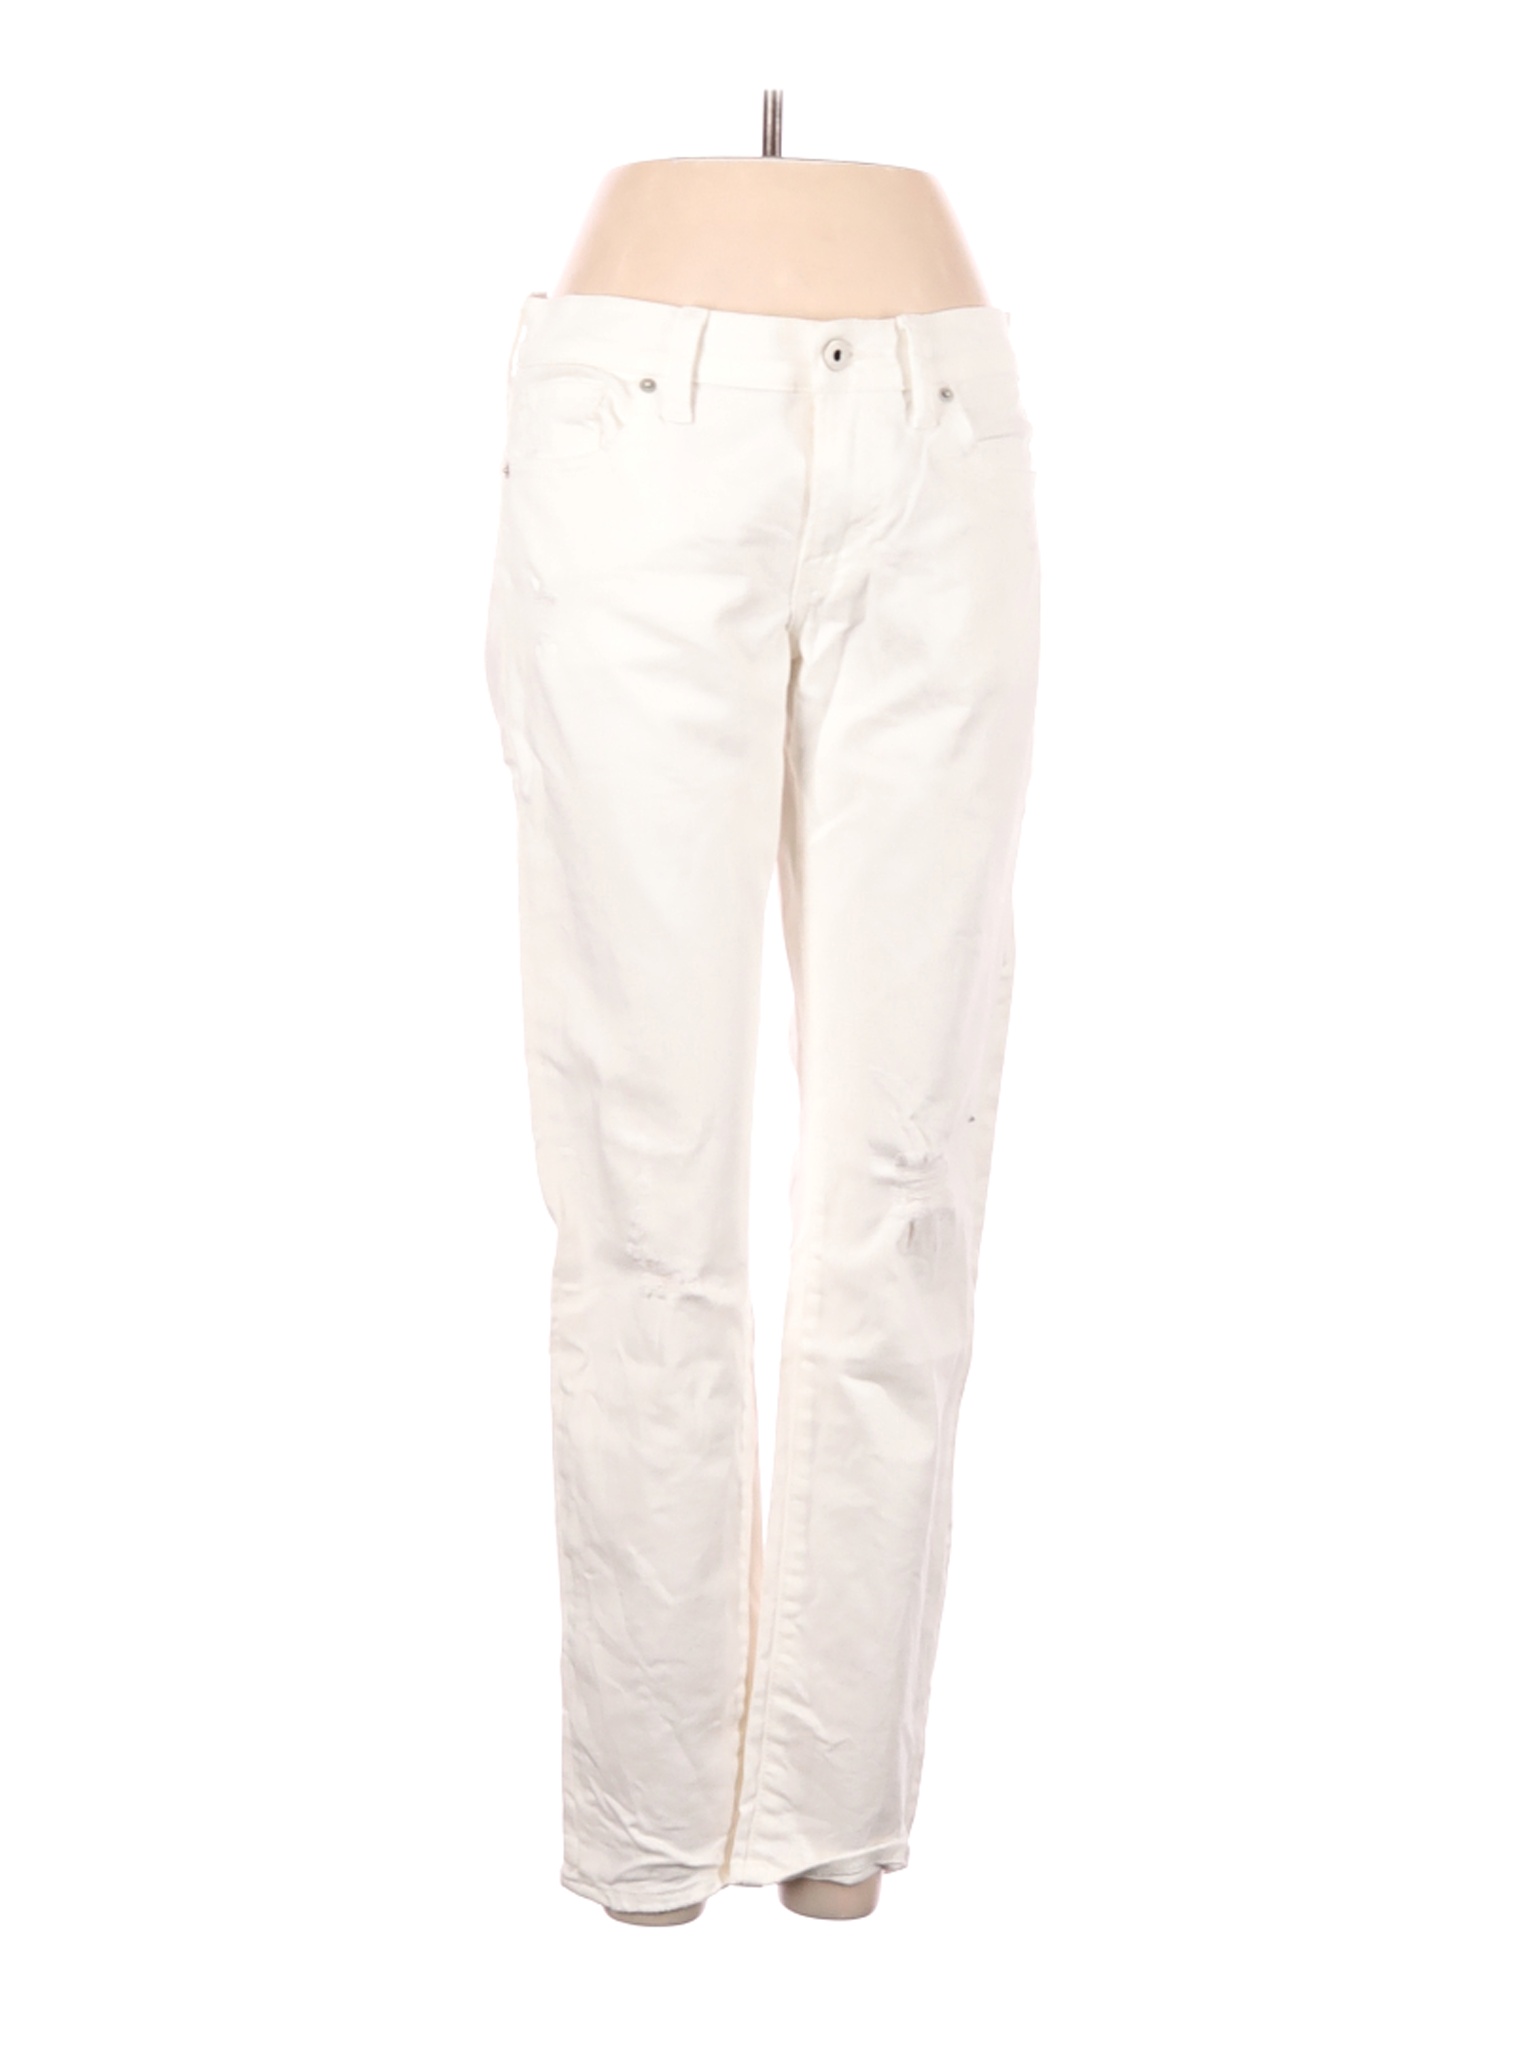 Lucky Brand Women White Jeans 2 | eBay